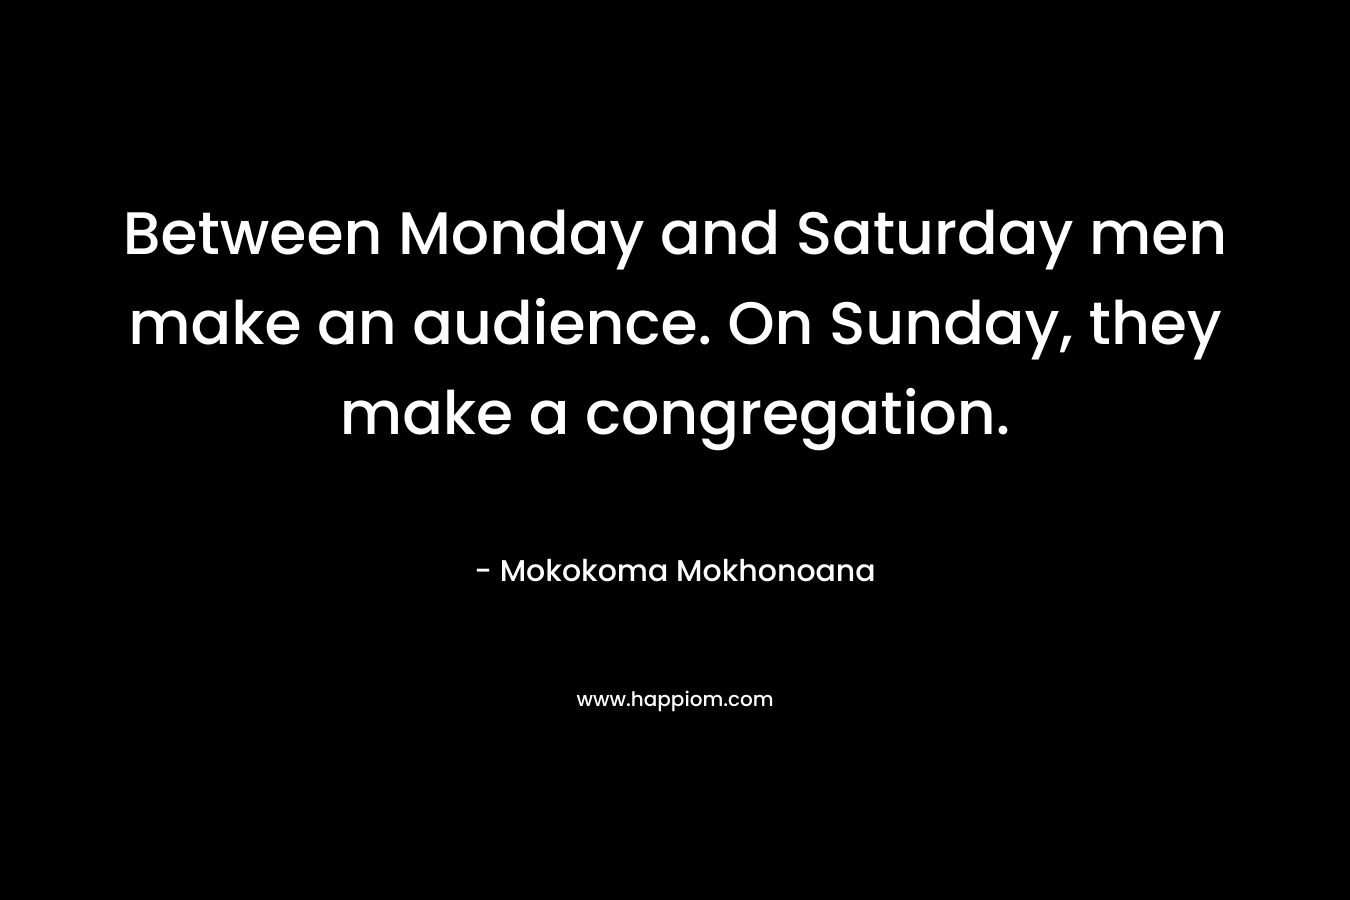 Between Monday and Saturday men make an audience. On Sunday, they make a congregation. – Mokokoma Mokhonoana